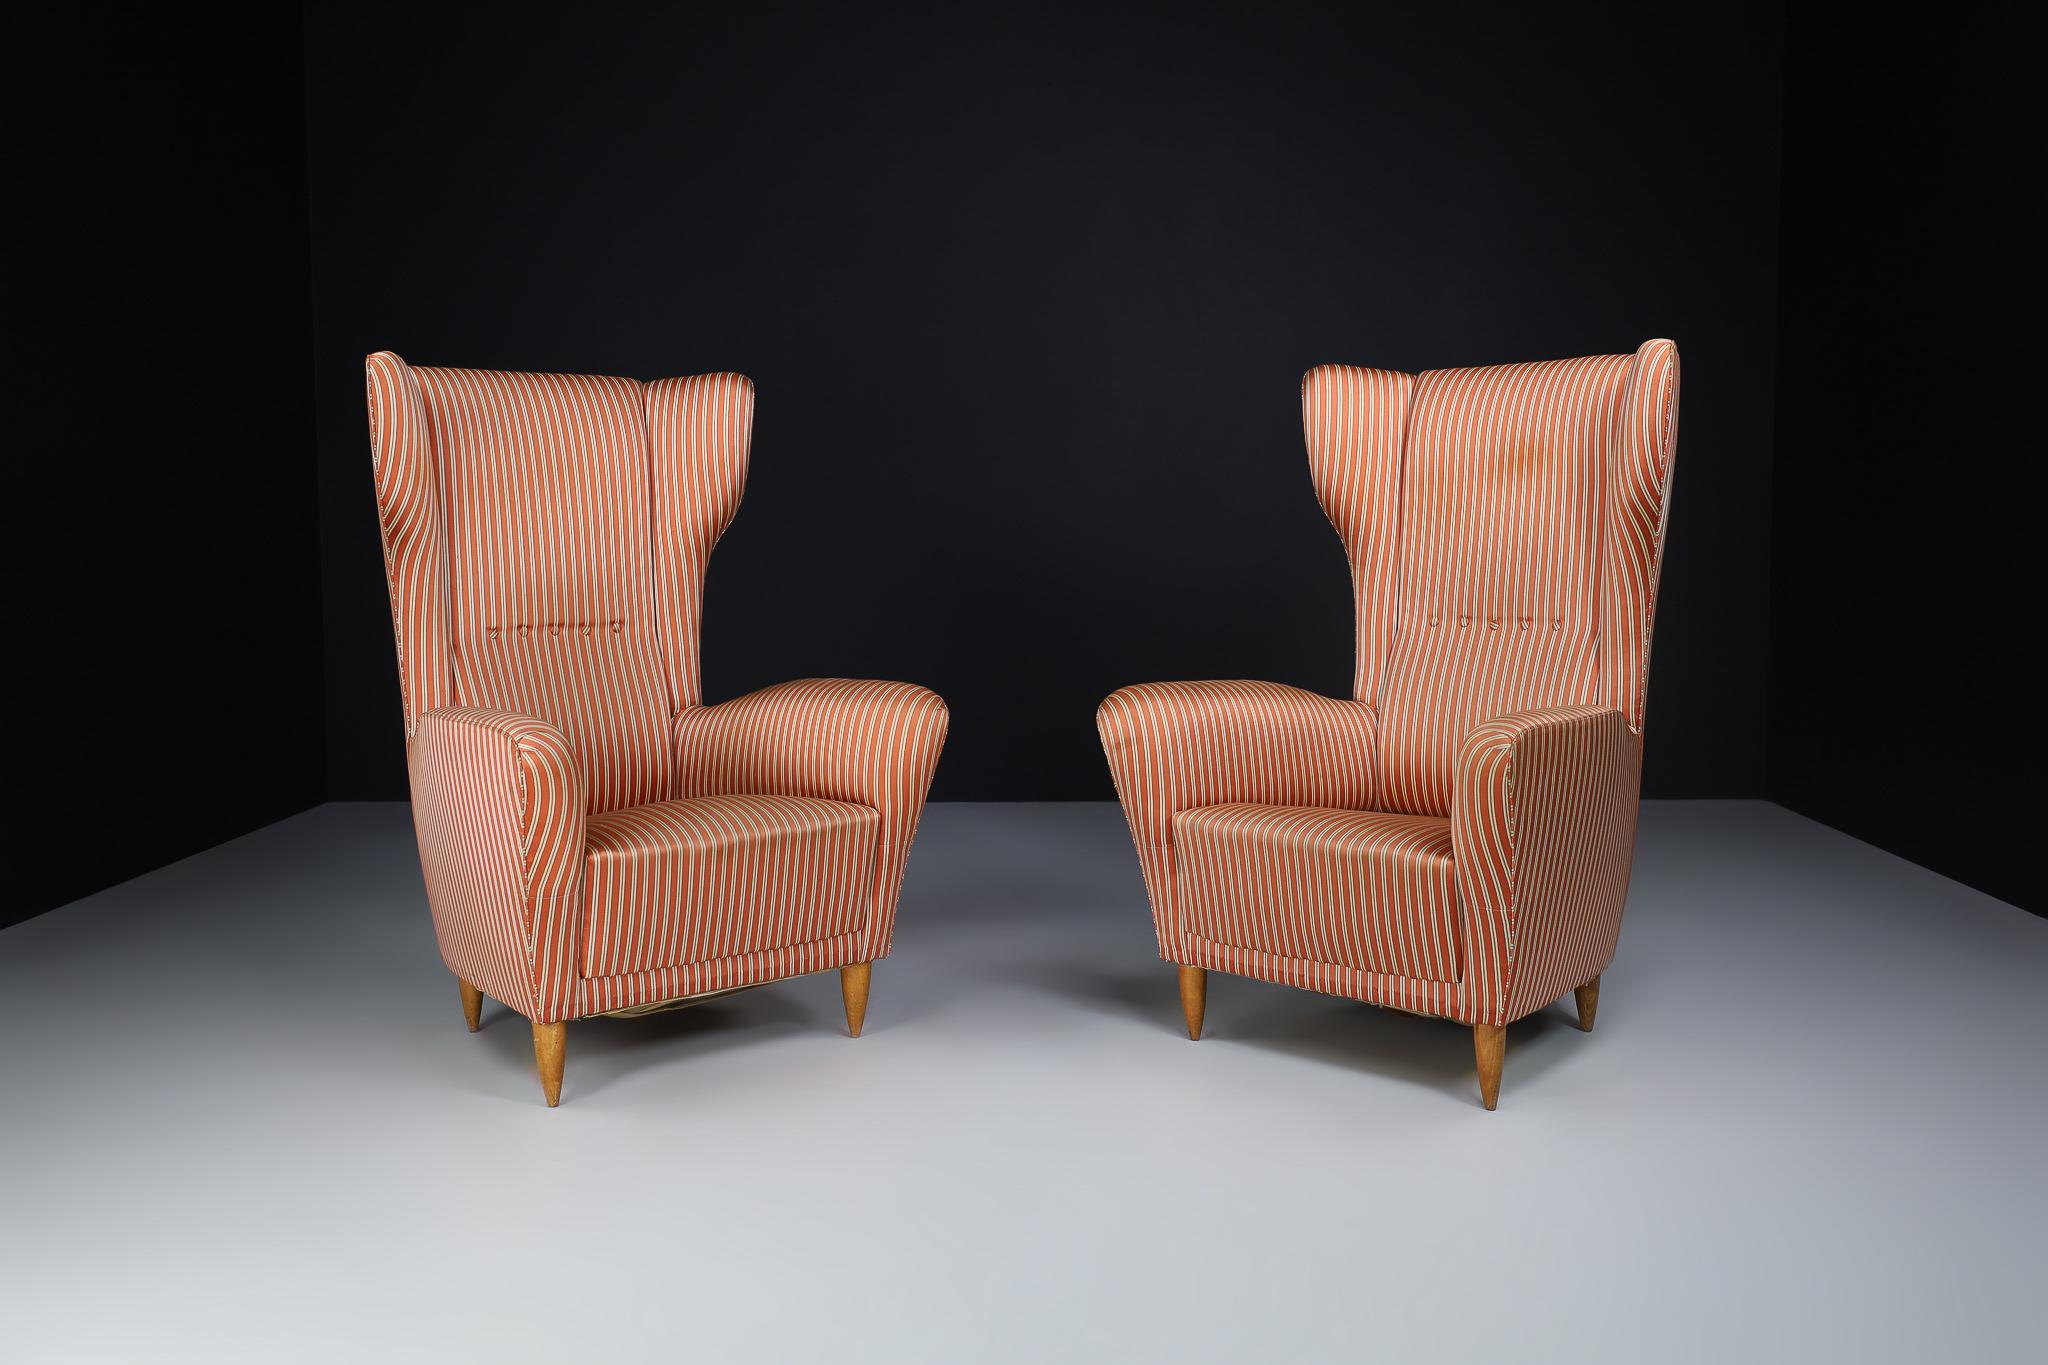 Paire de chaises longues originales à haut dossier, fabriquées et conçues dans le style de Federico Munari et Gio Ponti en Italie dans les années 1940. Cet élégant ensemble de chaises longues comporte des ailes et des accoudoirs incurvés. Grâce à